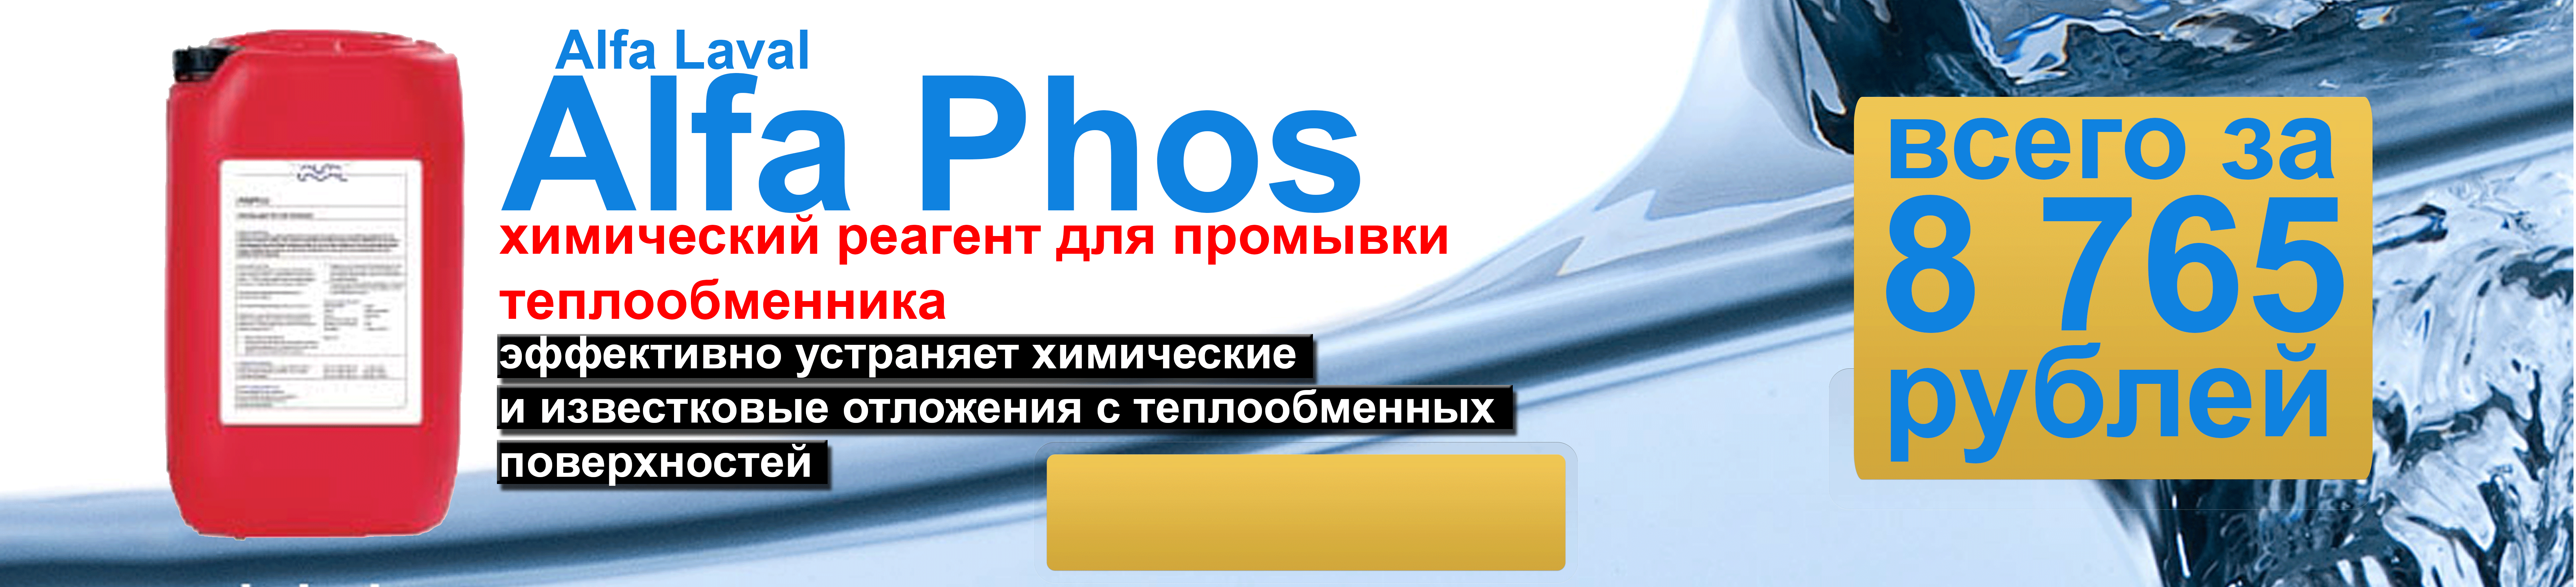 Купить моющее средство Alfa Phos для химической чистки теплообменника.